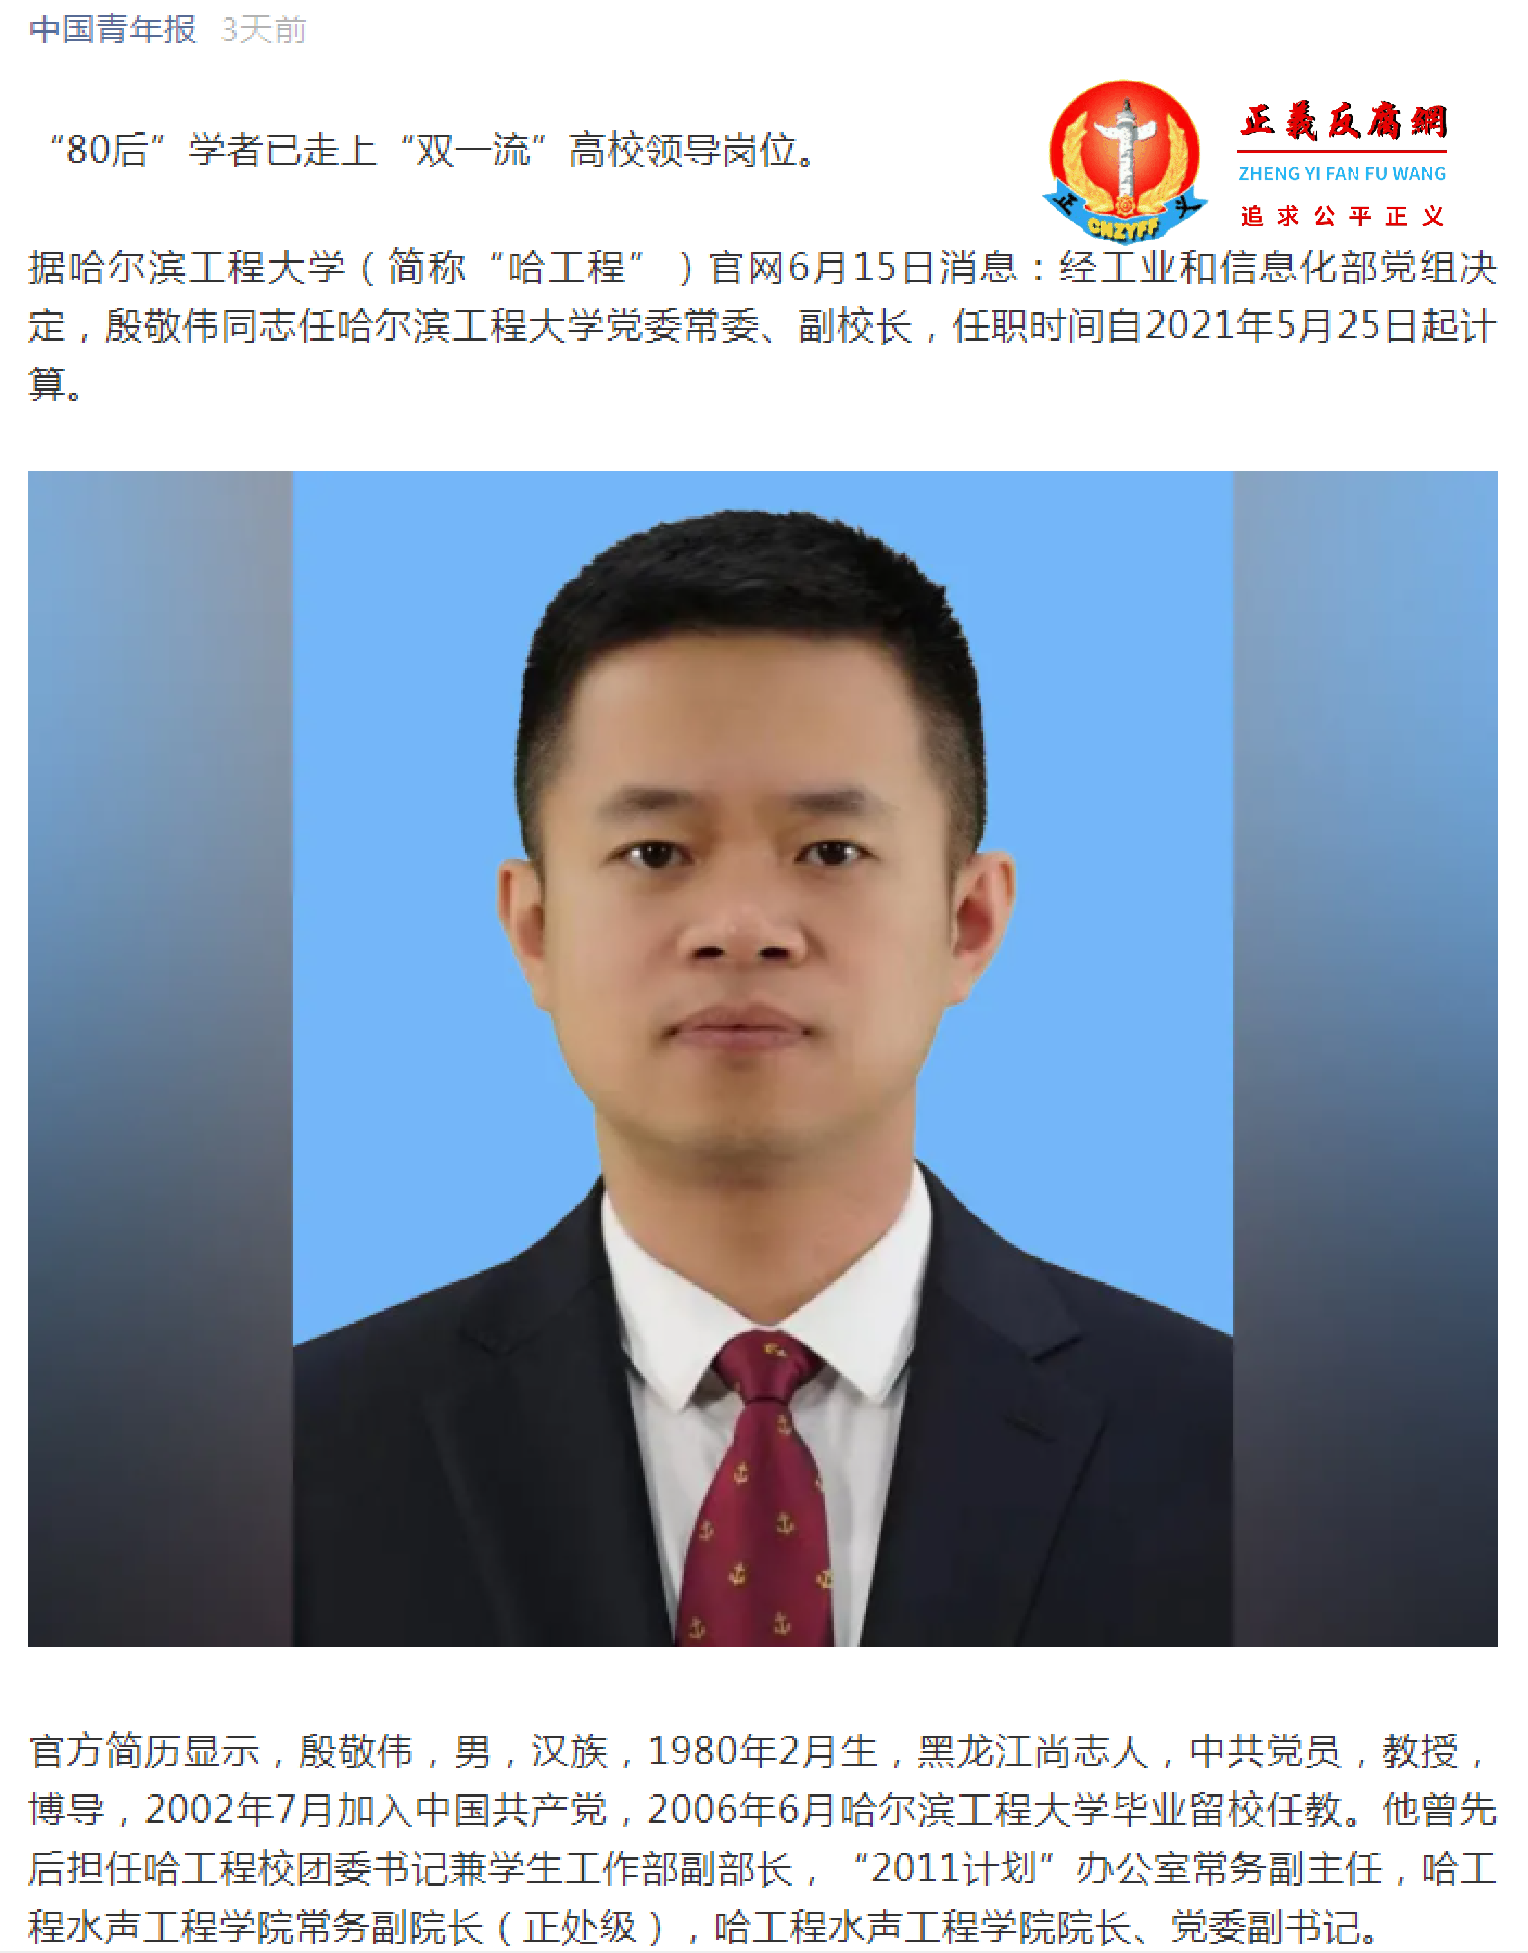 2021年5月25日，殷敬伟任职为哈尔滨工程大学党委常委、副校长 (2).png